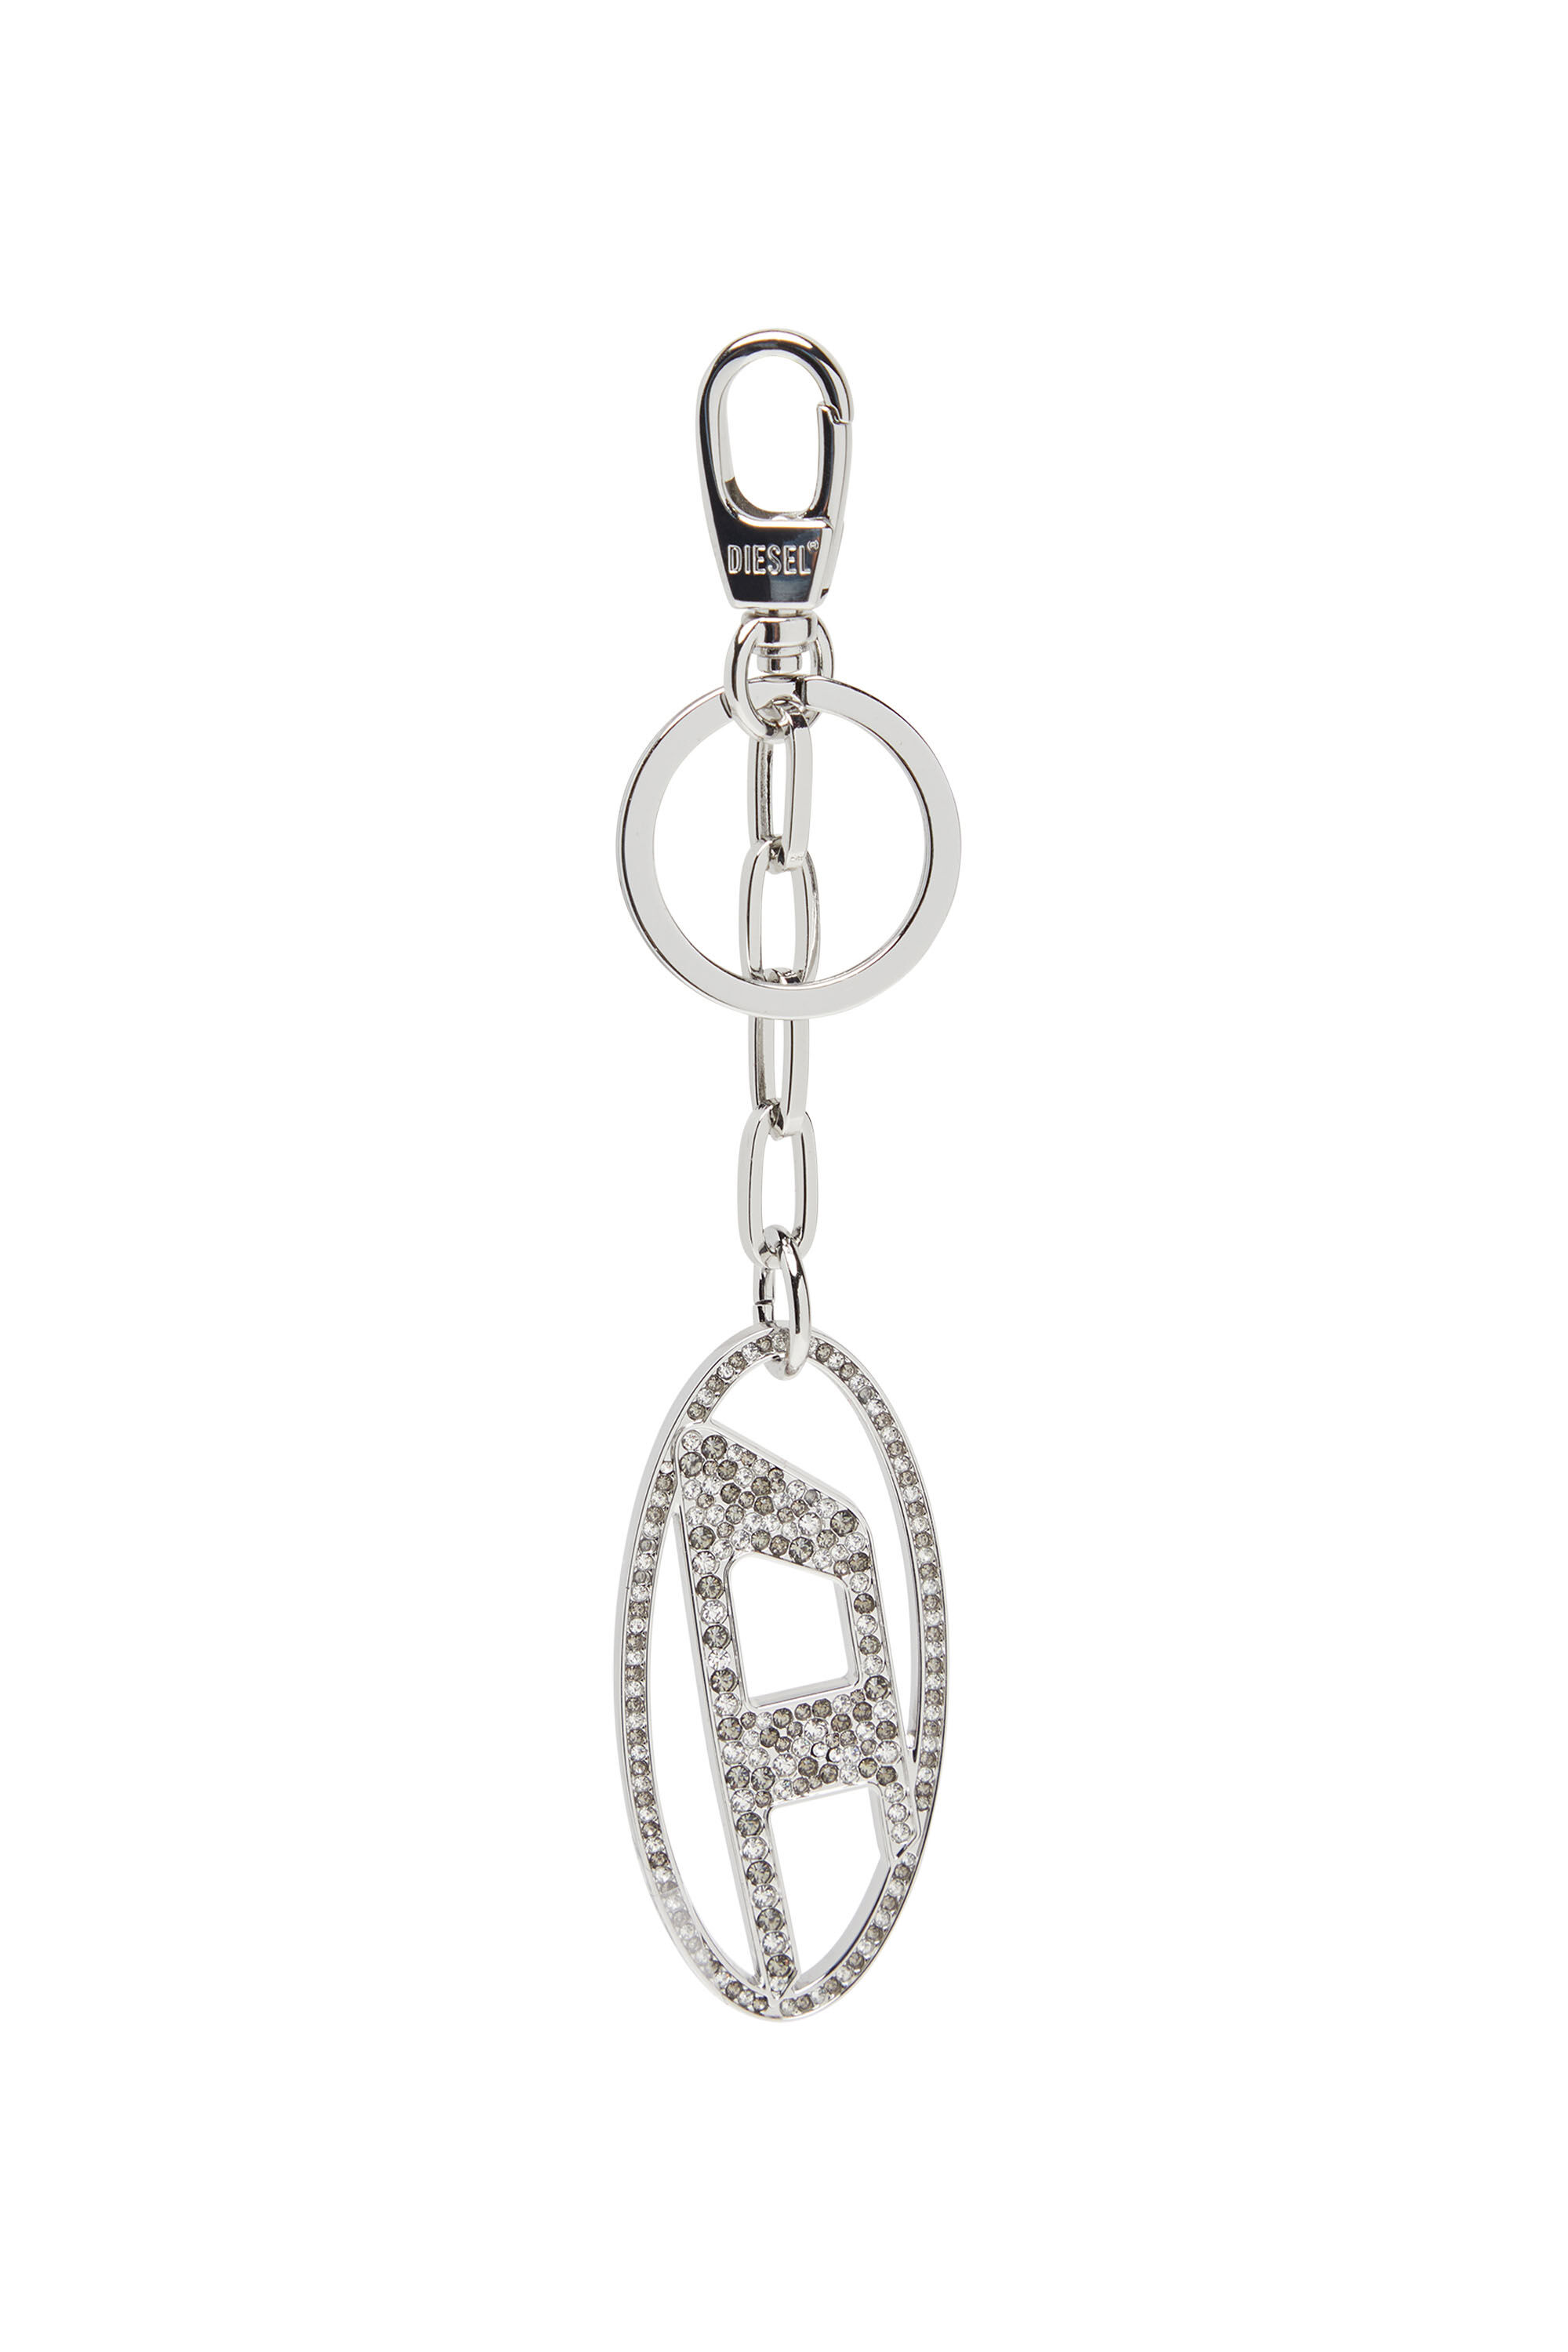 Diesel - HOLY-C, Damen Oval D-Schlüsselanhänger aus Metall mit Strass in Silber - Image 1